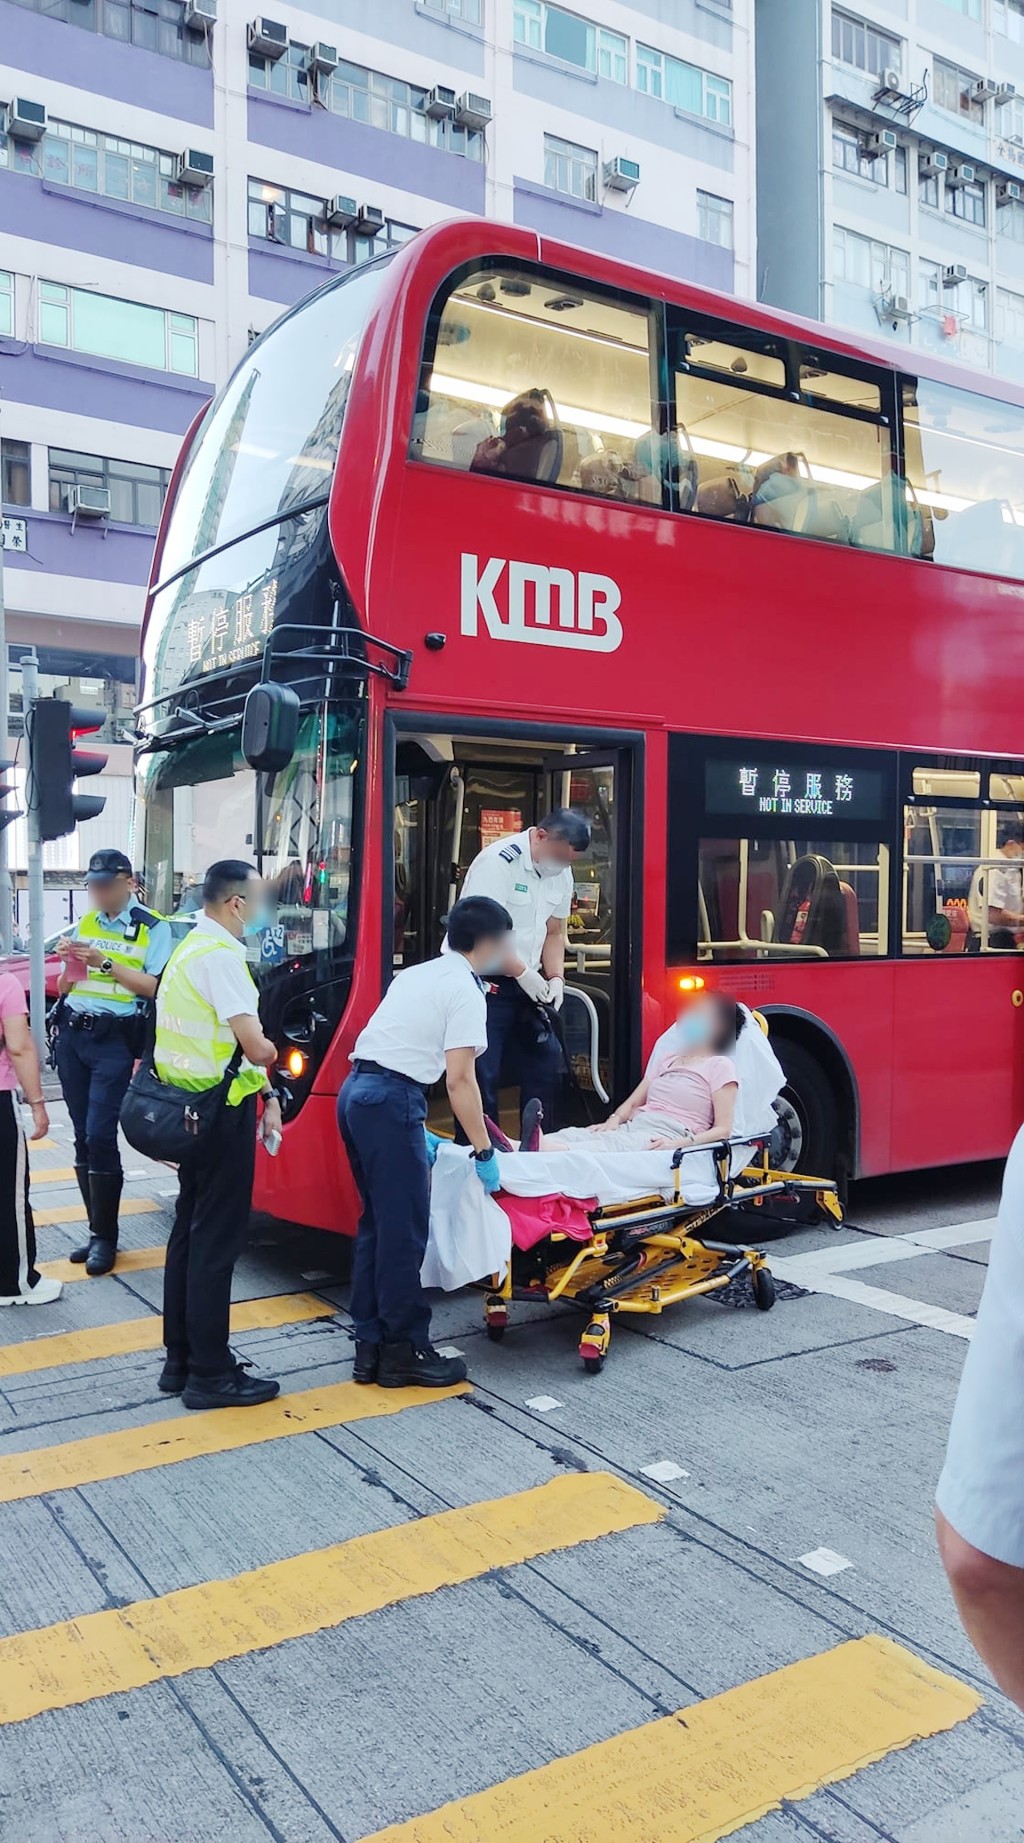 相中巴士為九巴路線59X，來往屯門碼頭及旺角東站，大媽其後被救護車送院。(是日快快-巴士即日相FB相片)